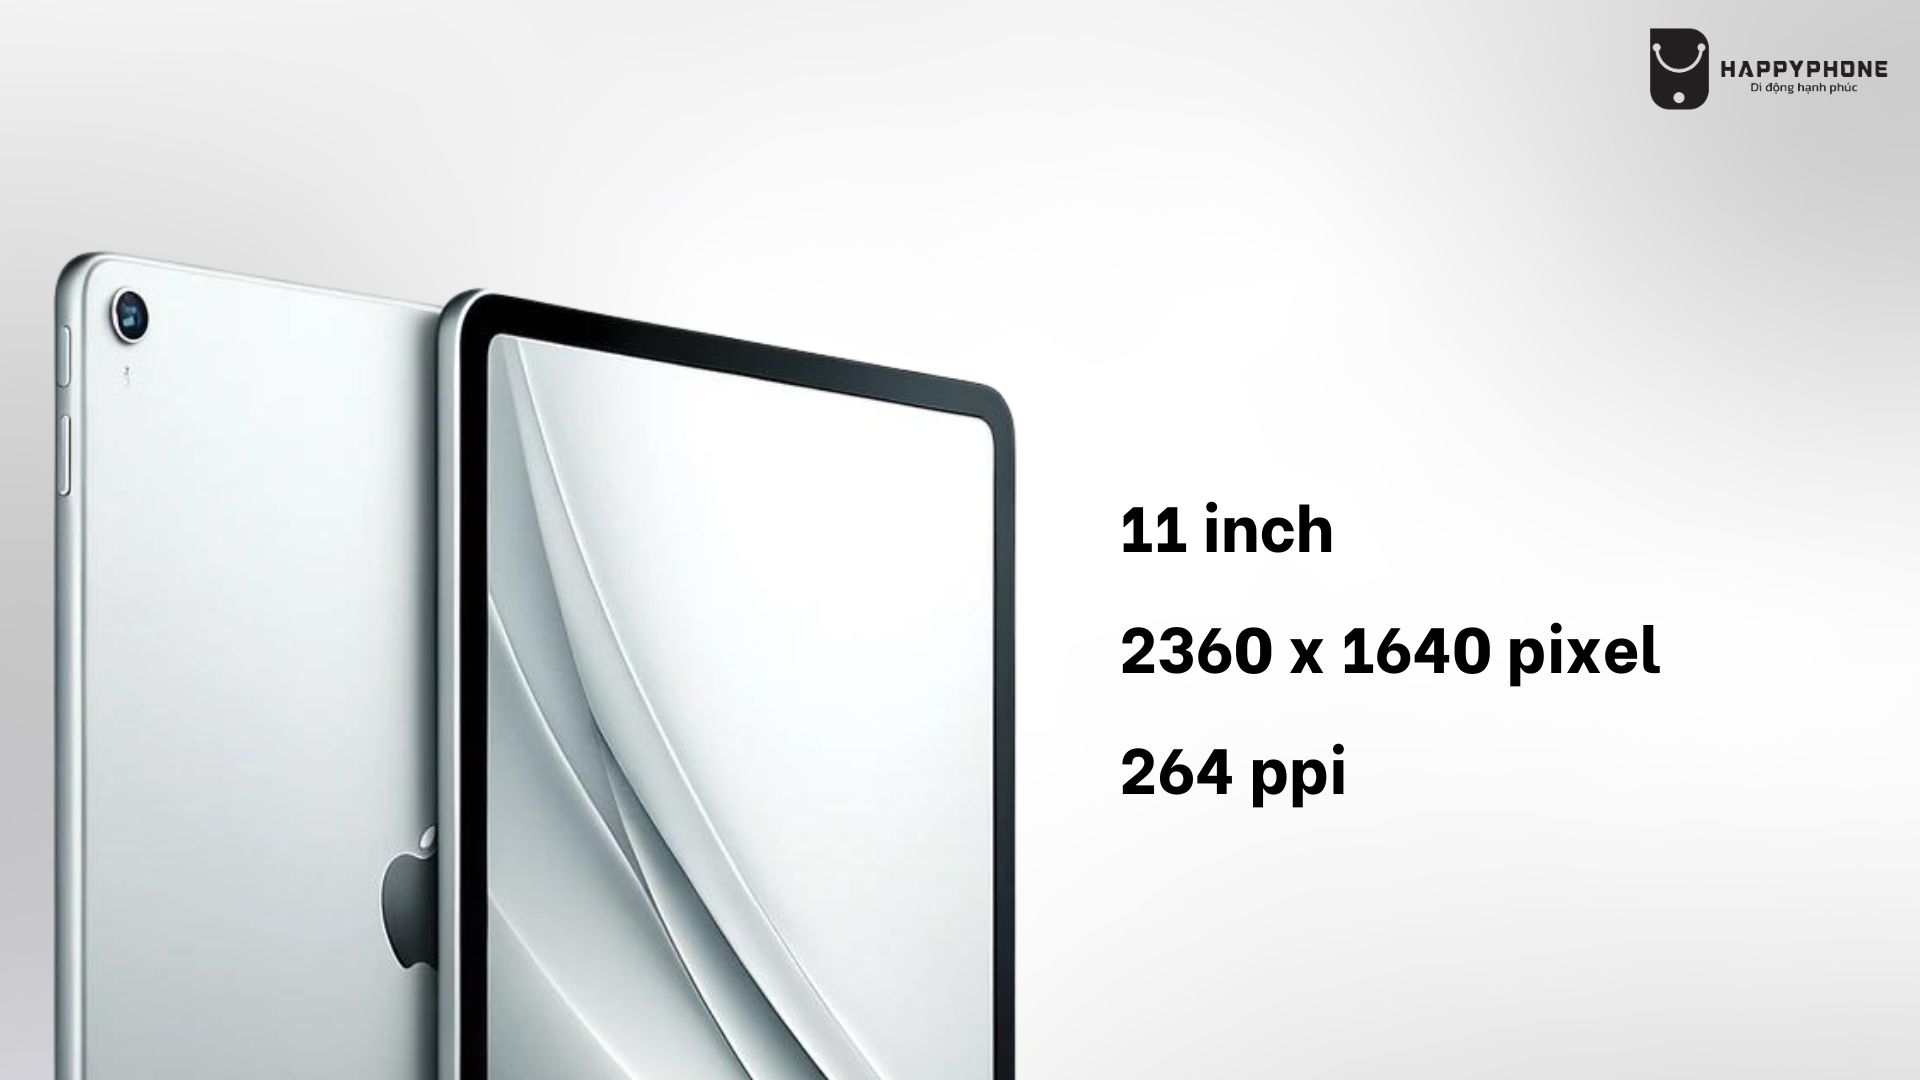 Về kích thước, độ phân giải, iPad Gen 11 tương tự thế hệ tiền nhiệm